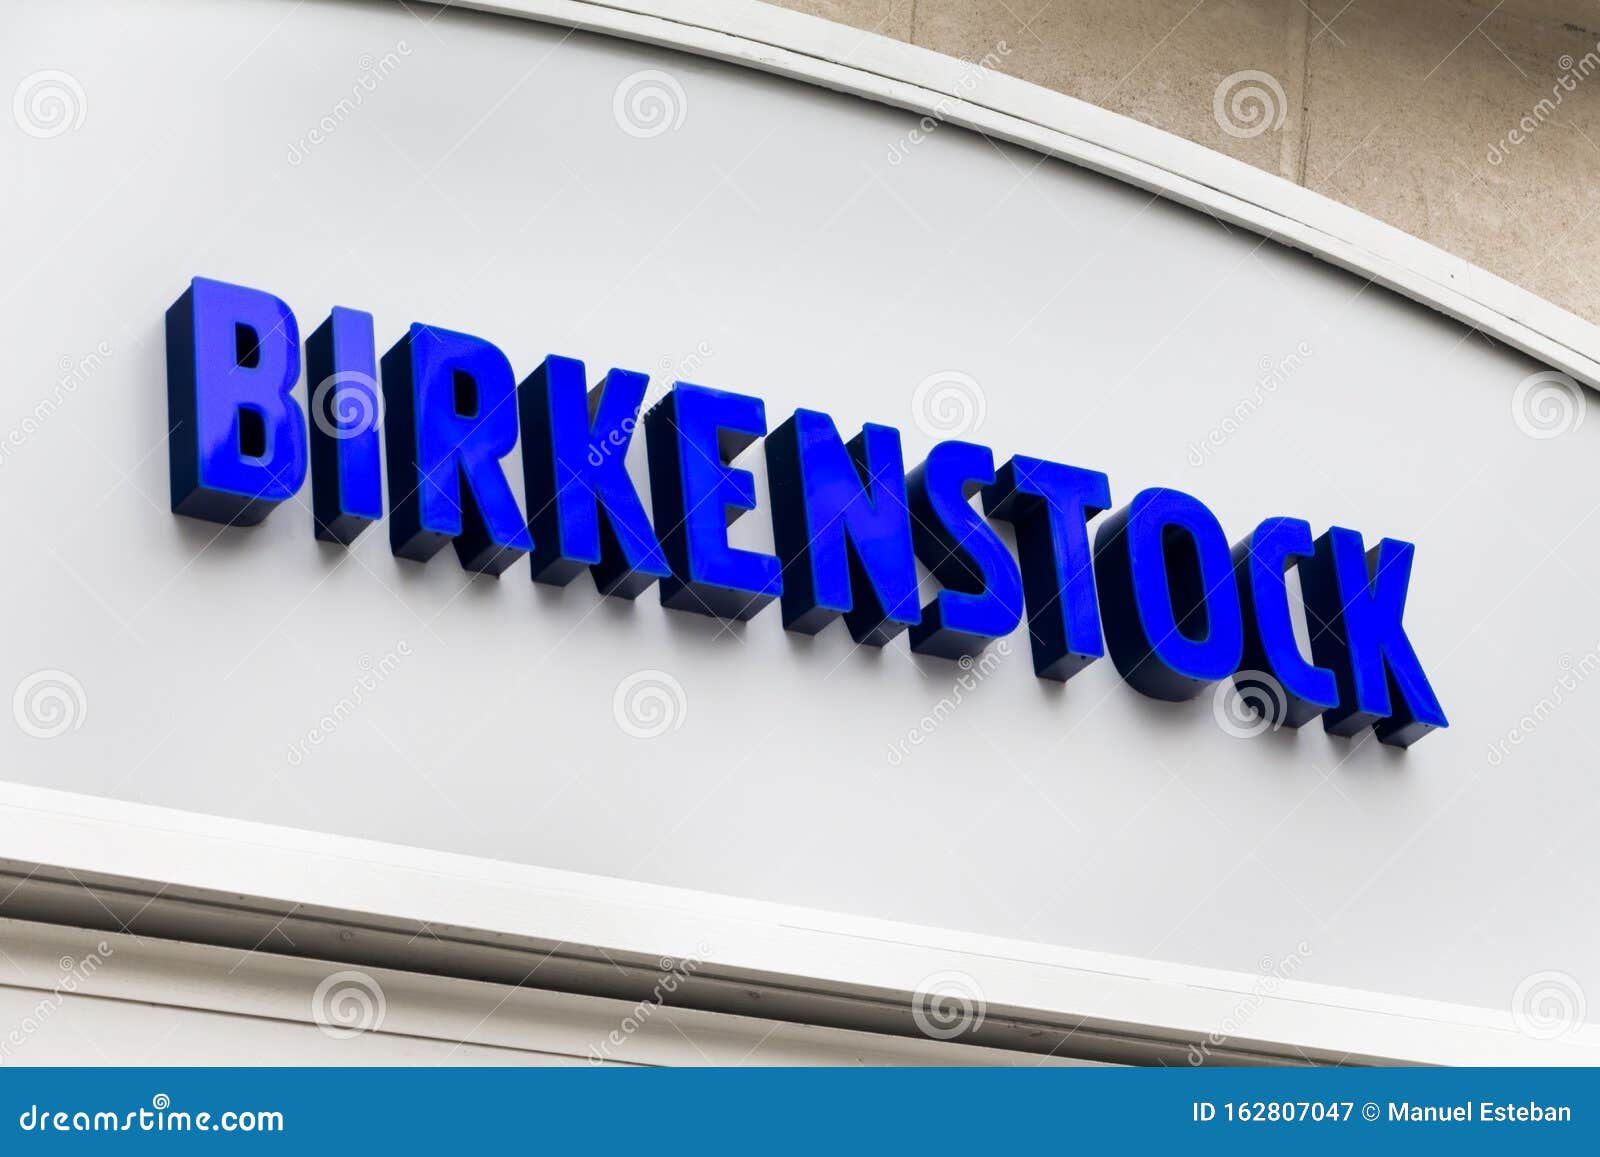 my birkenstock shop